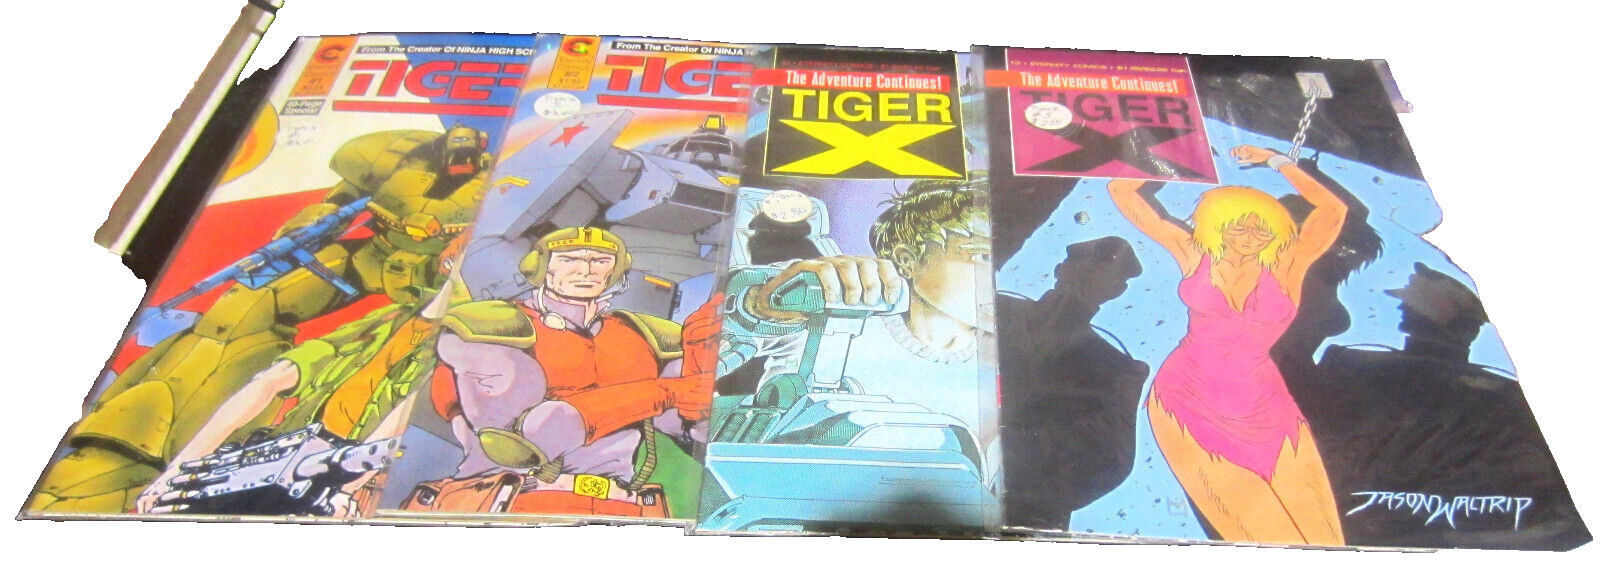 Tiger-X #1, 3; #2 (1988) Special #1 (x2) June 1988 Eternity Comics (VF-NM, 9.0)